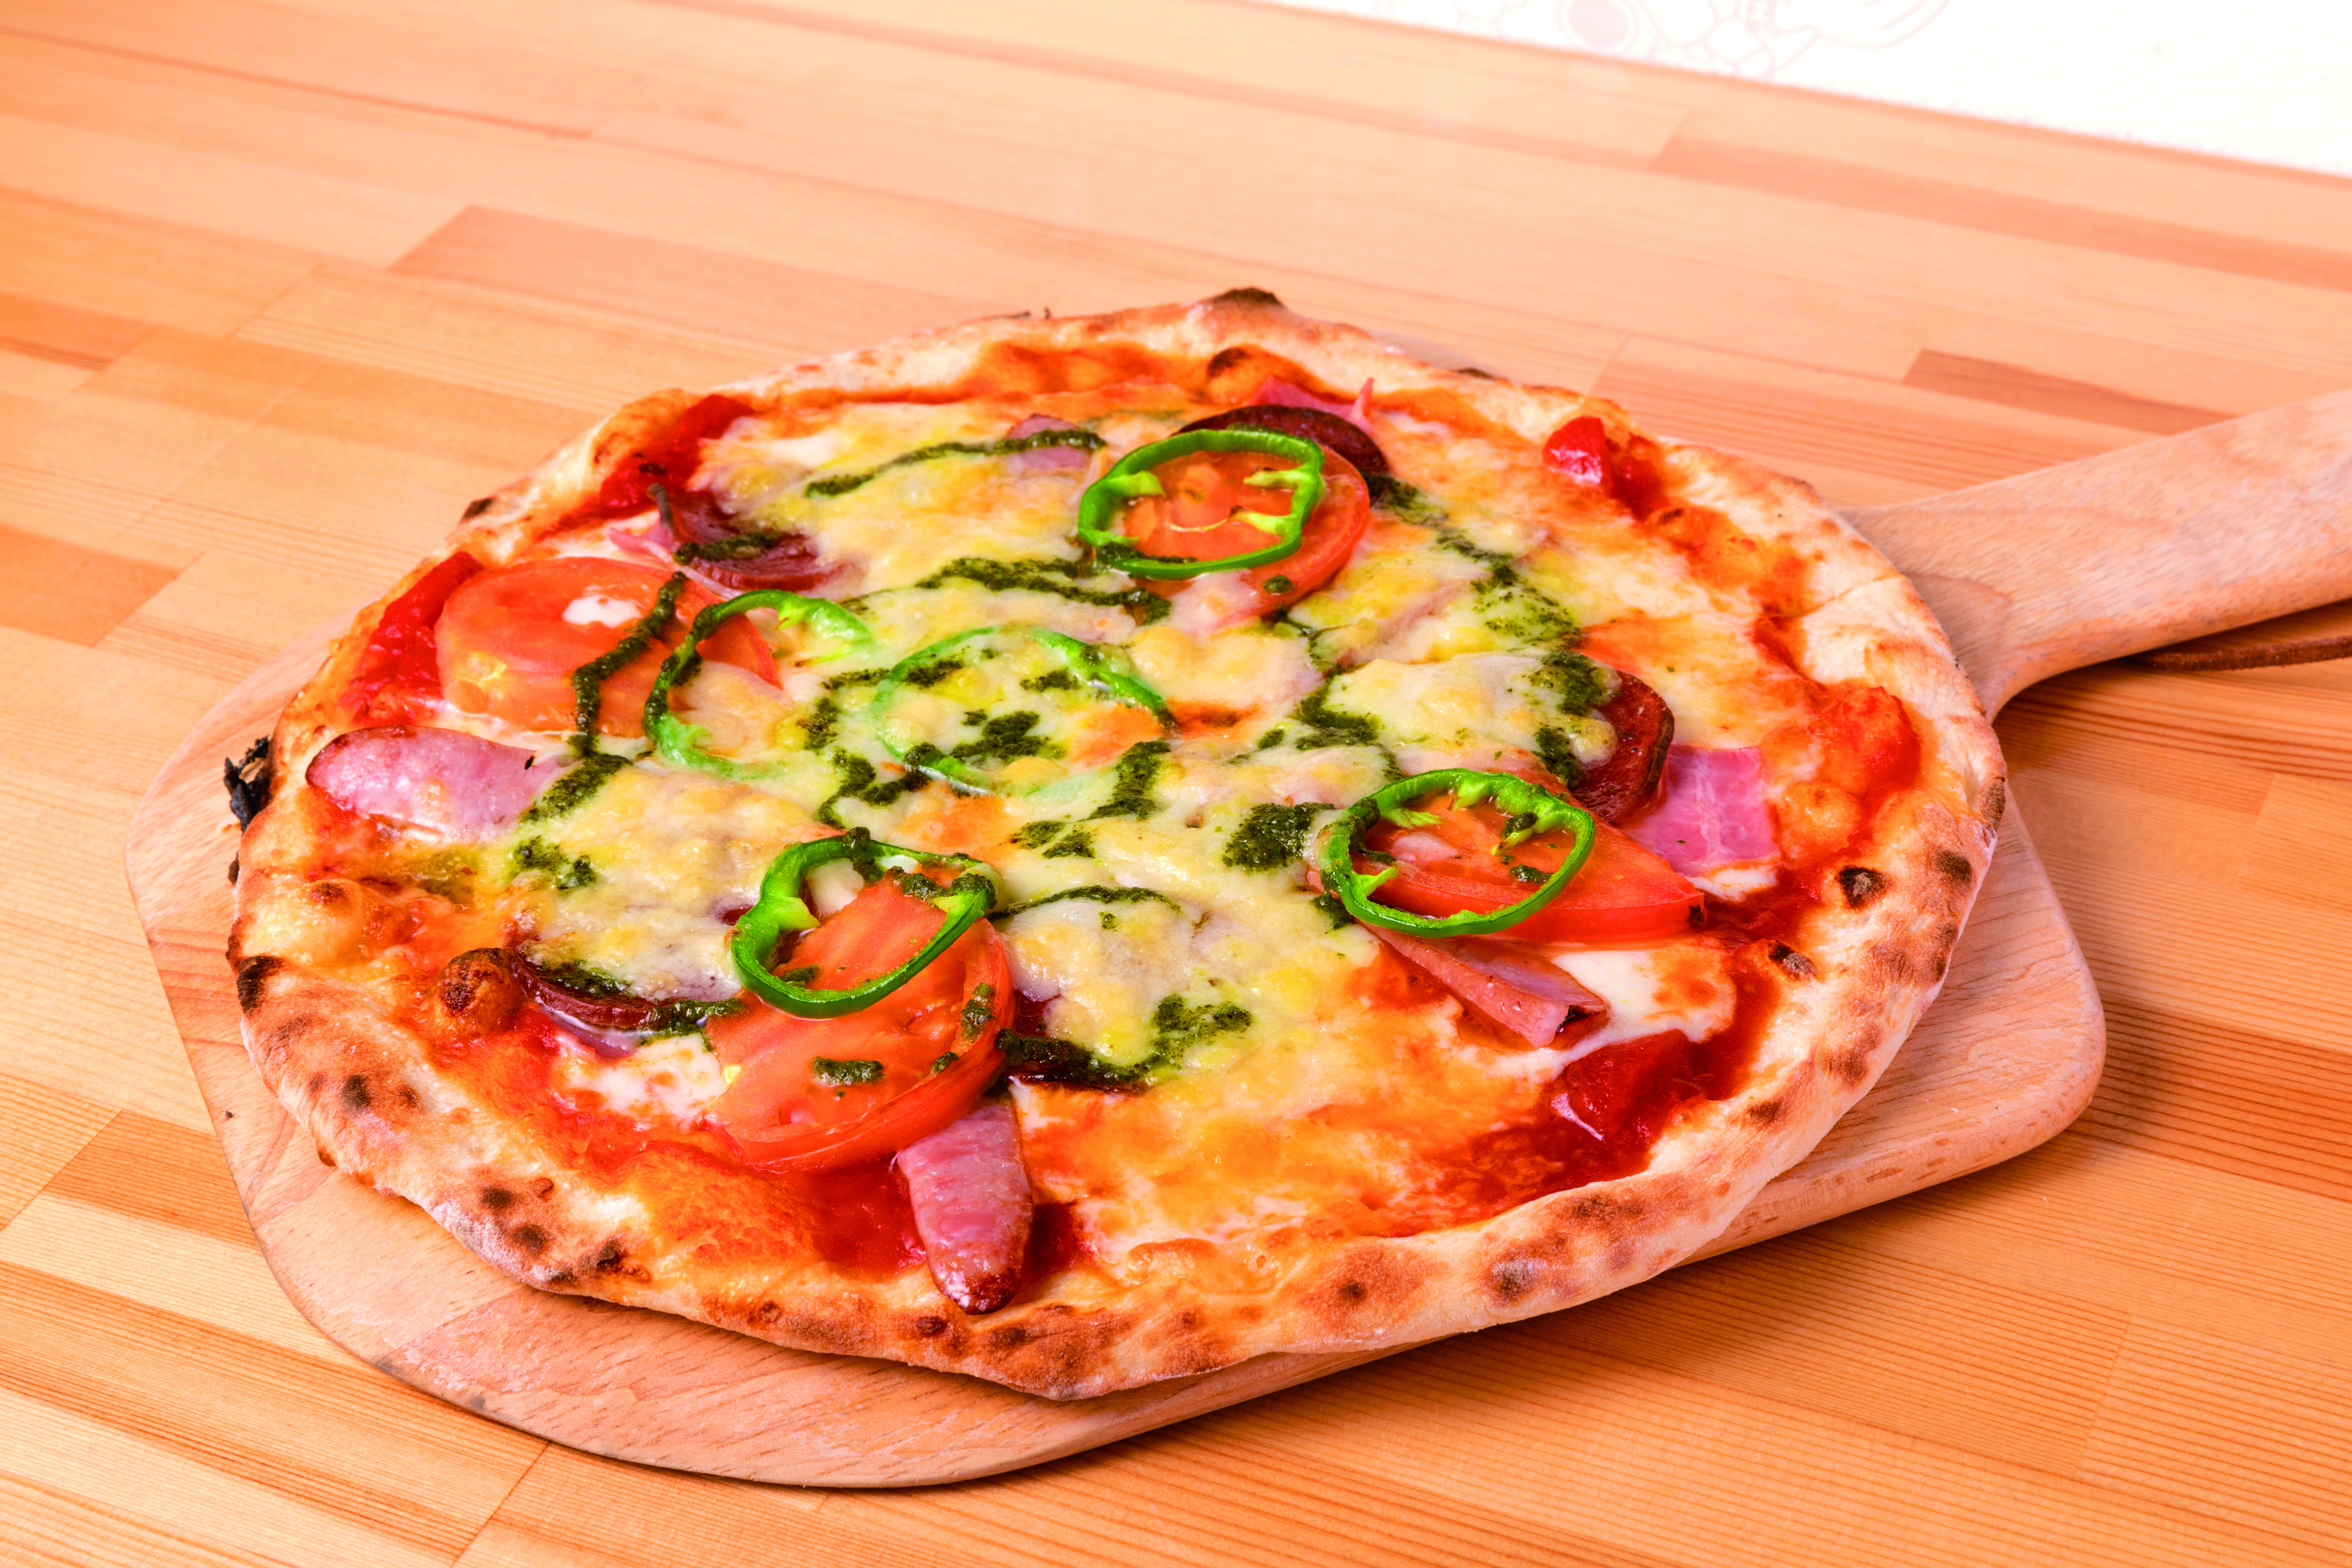 <p>◆MIXピザ◆<br />
ウィンナー・サラミ・ベーコン・トマト・たまねぎ・ピーマンと具材たっぷりの本格ピザ</p>
